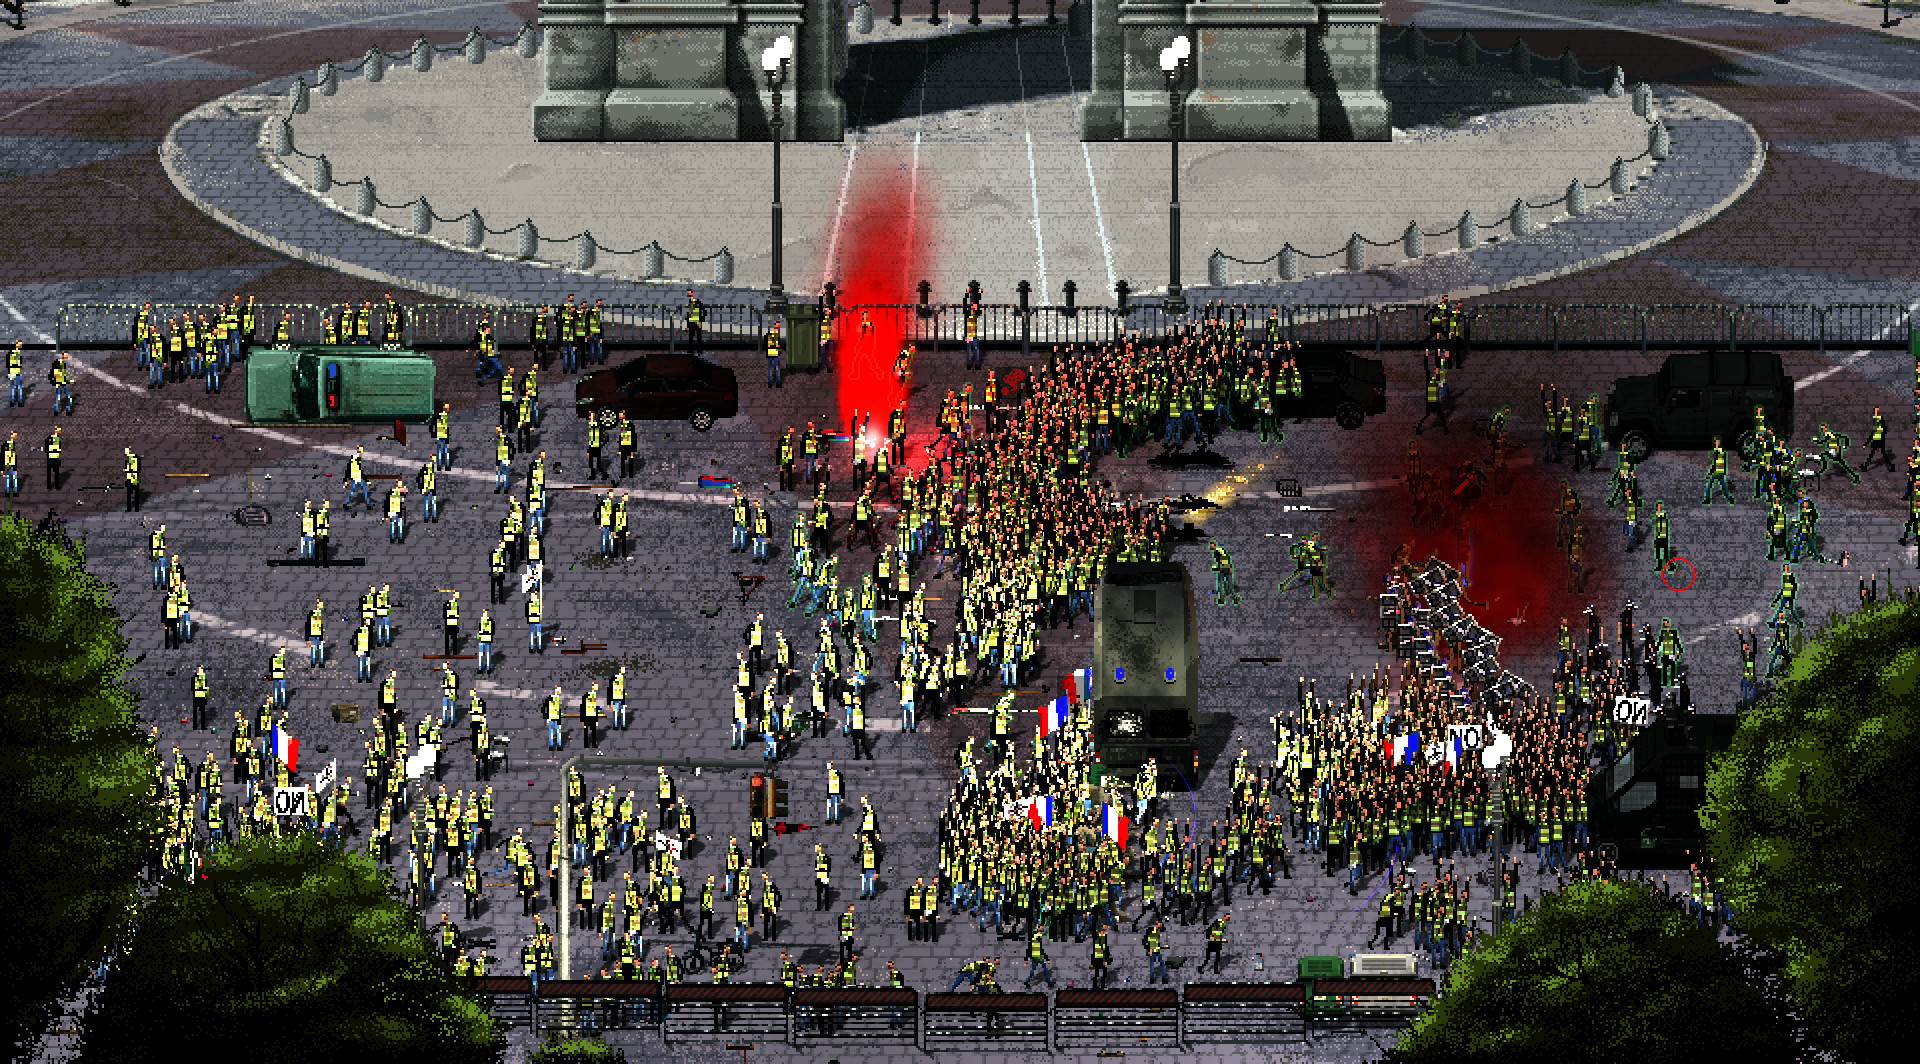 RIOT: Civil Unrest screenshot